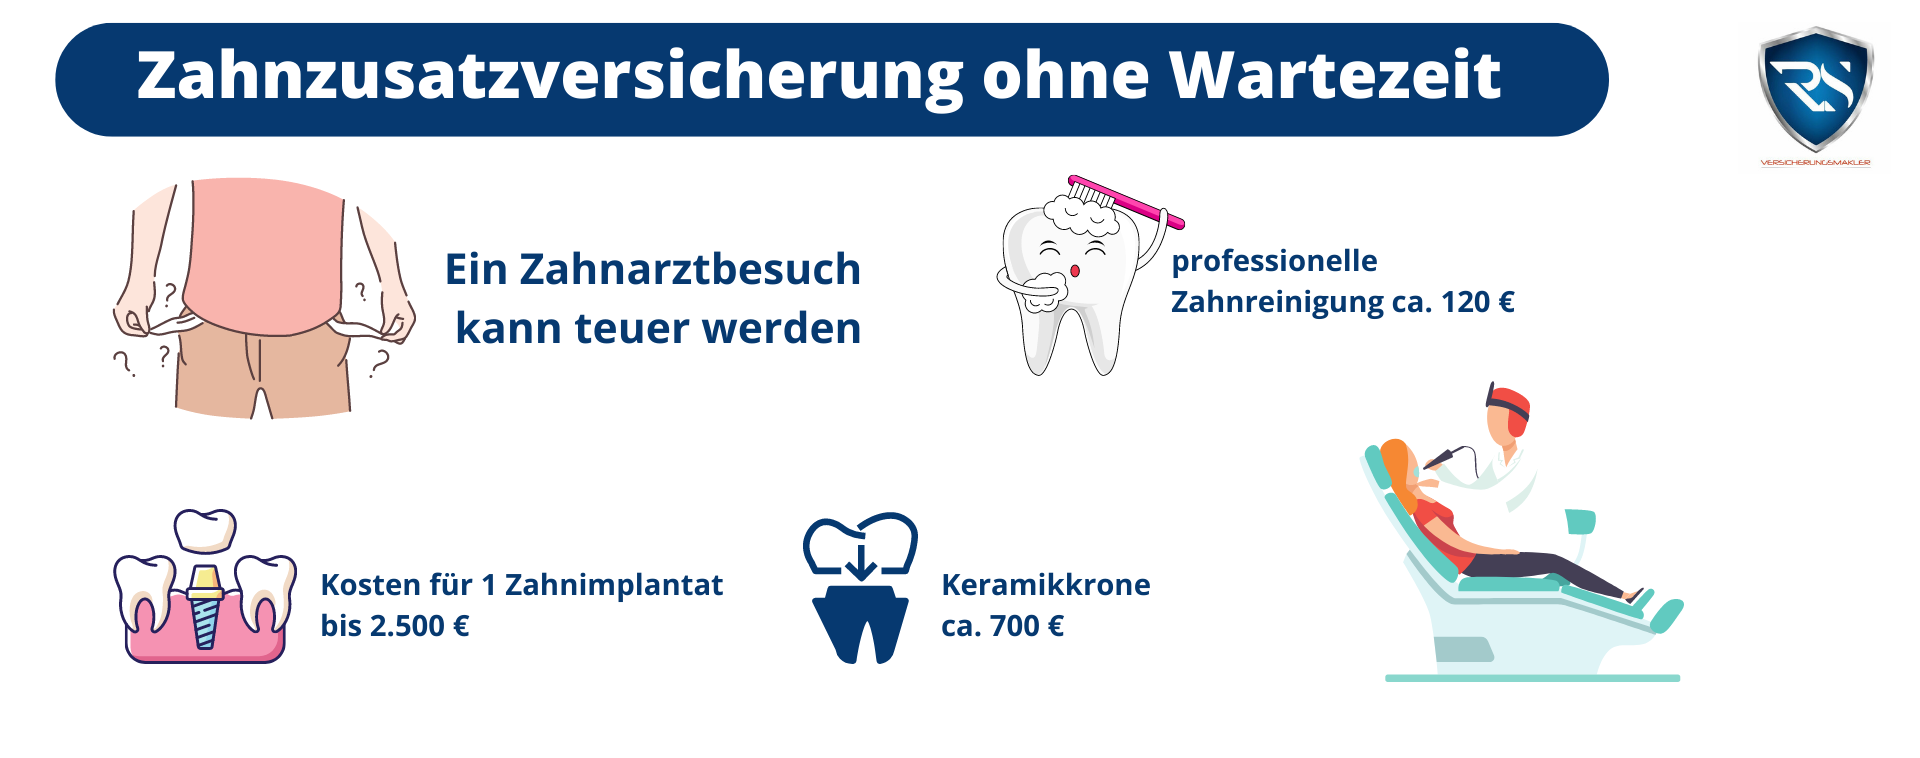 Zahnzusatzversicherung ohne Wartezeit abschließen